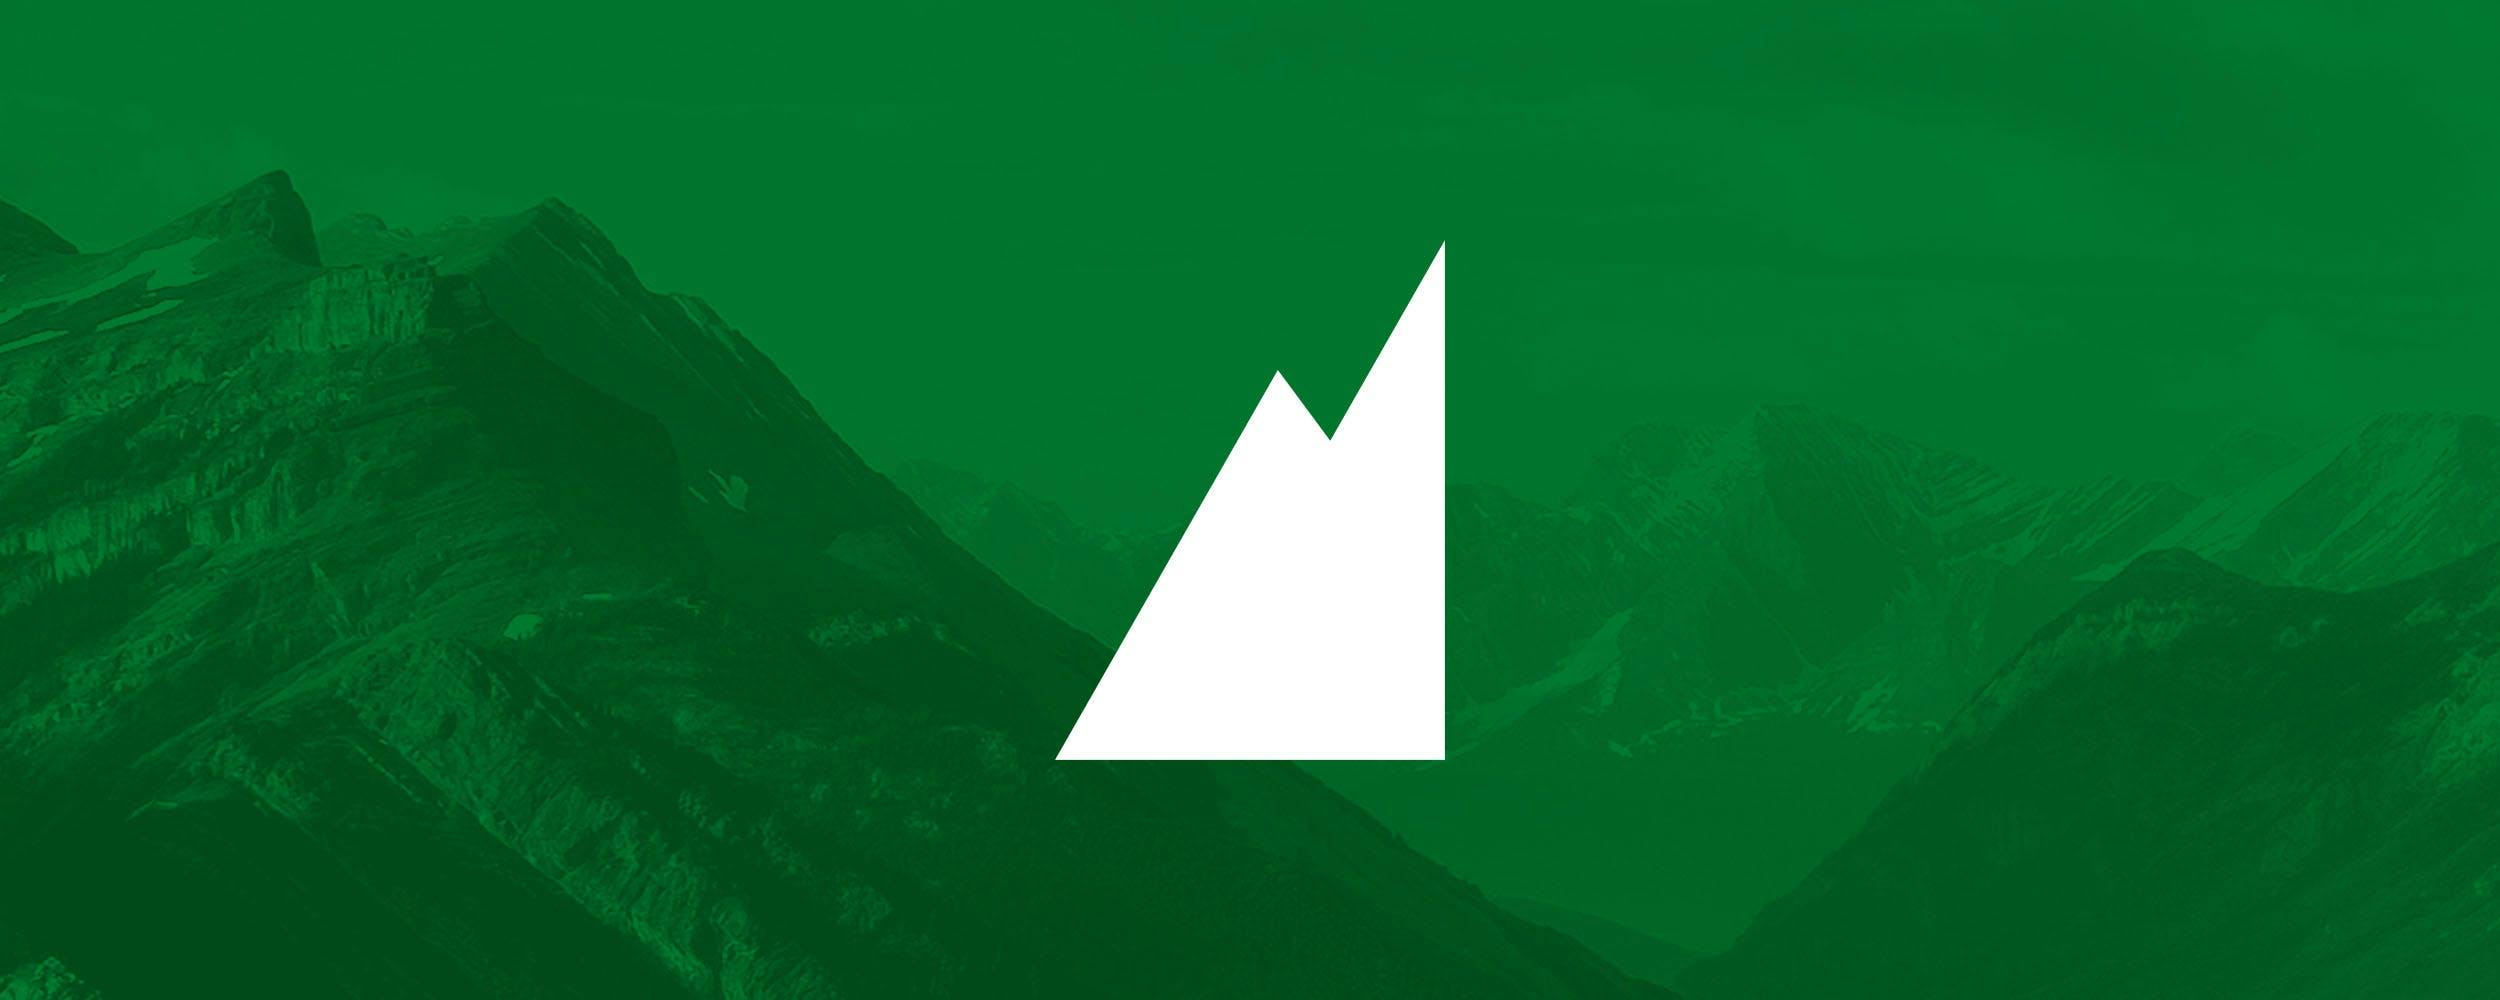 Le retour à la montagne : plus qu’un simple logo